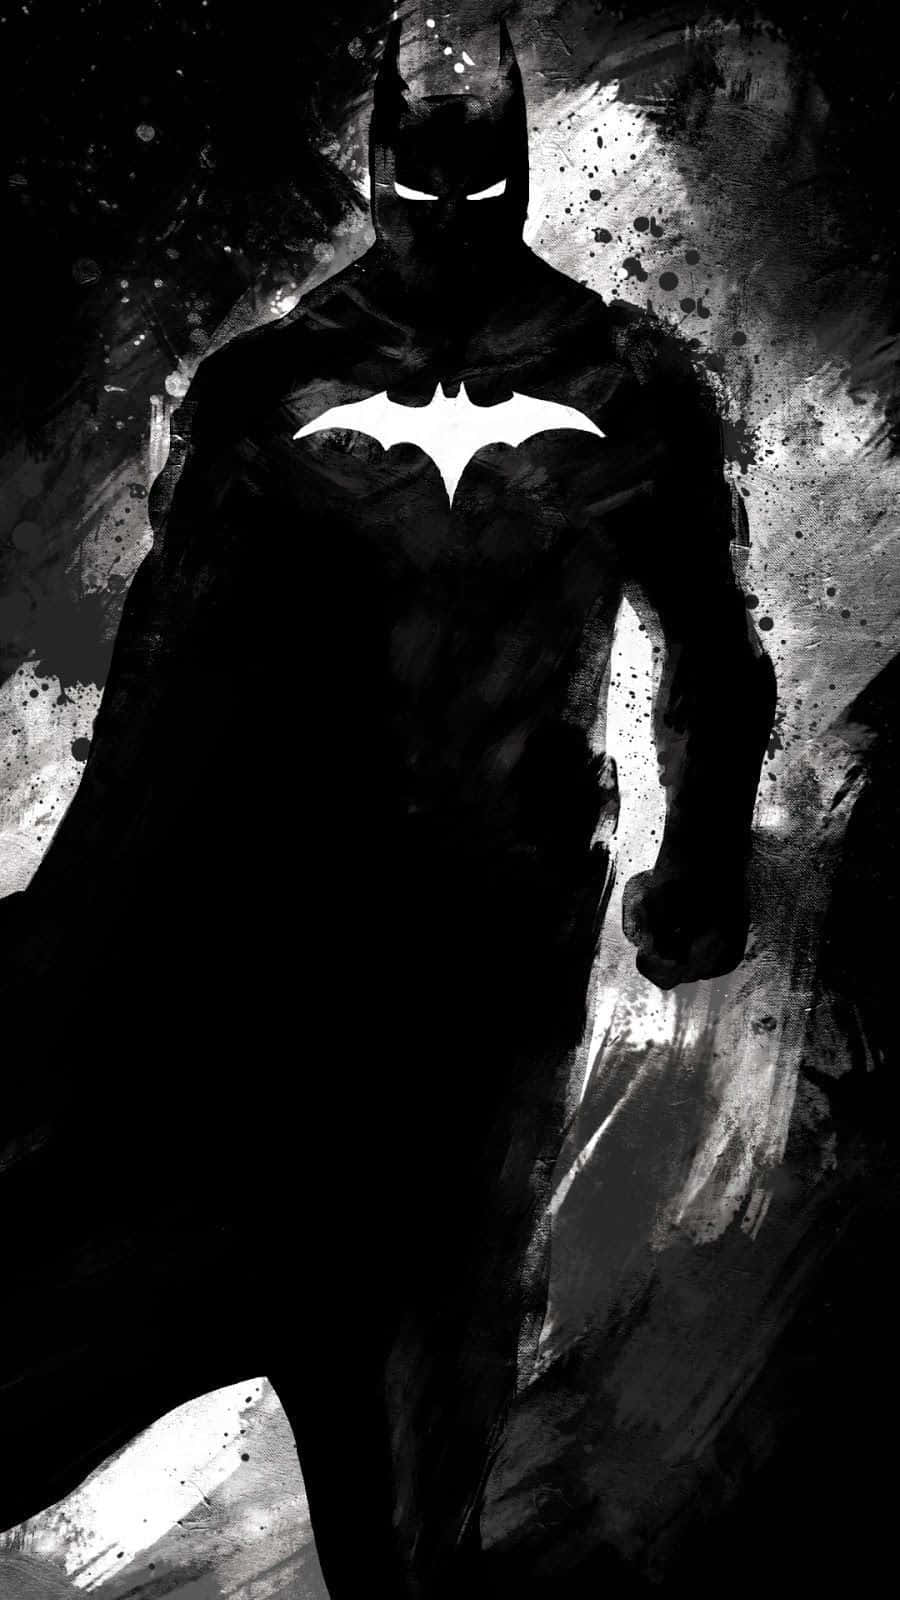 Caption: The Dark Knight in Monochrome Wallpaper